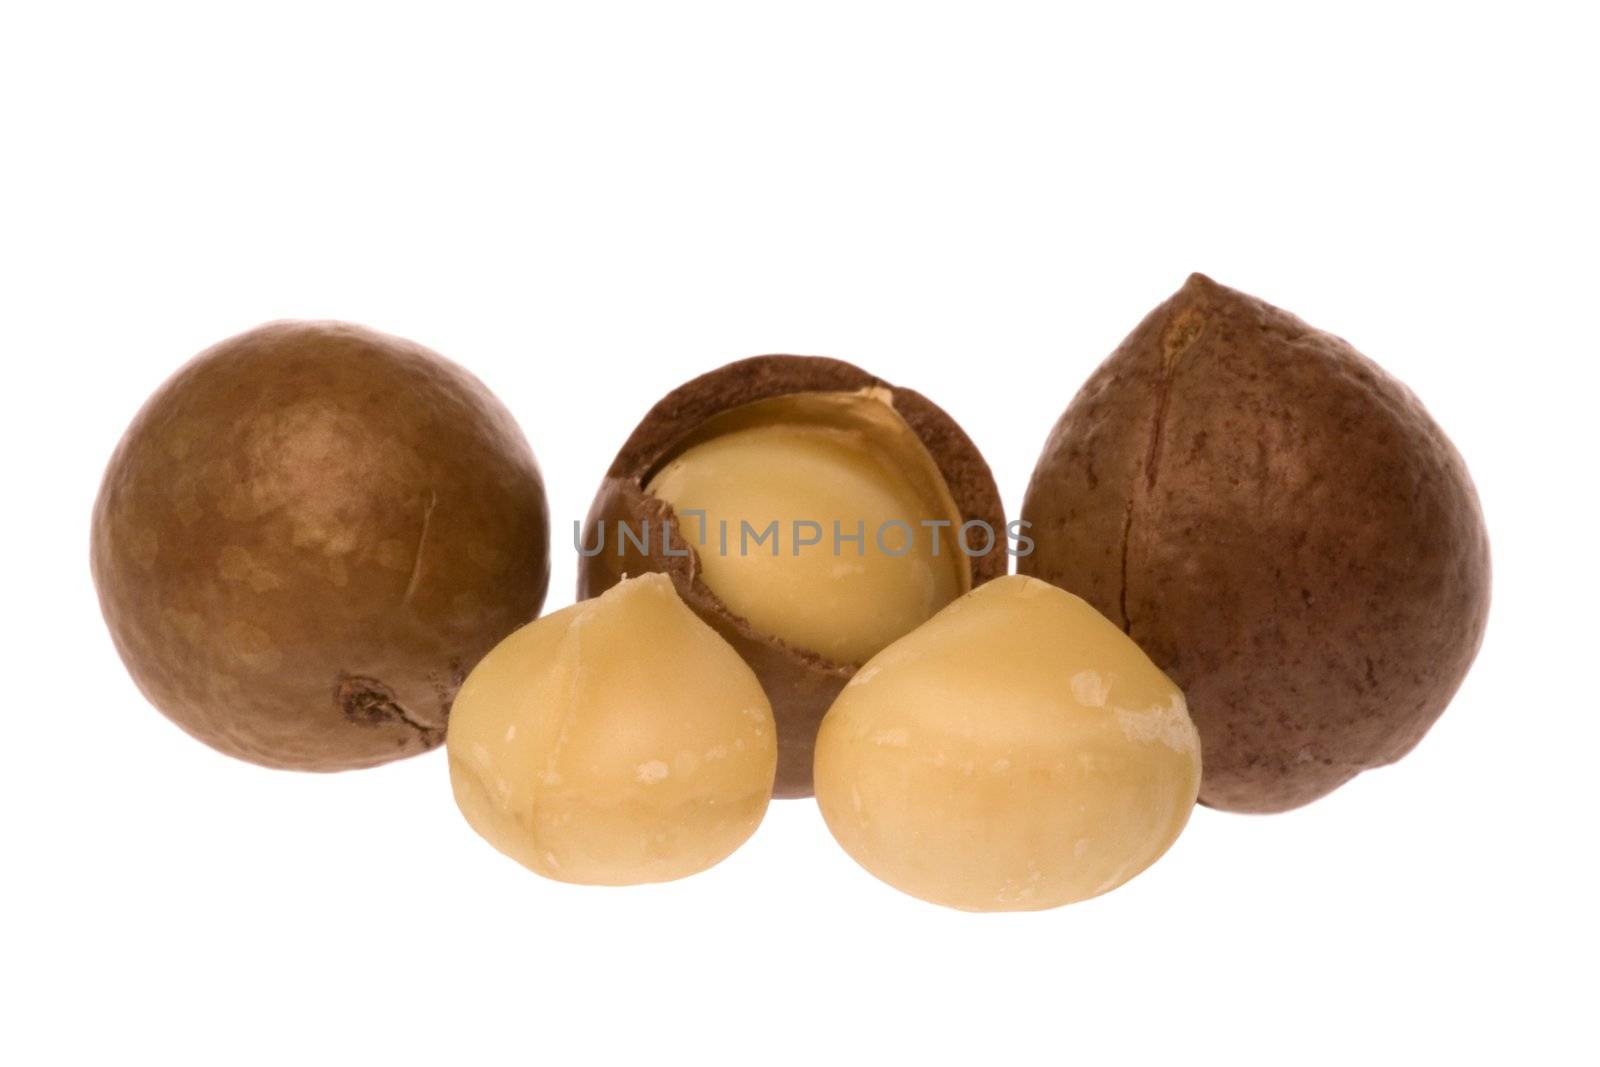 Isolated macro image of Macadamia nuts.